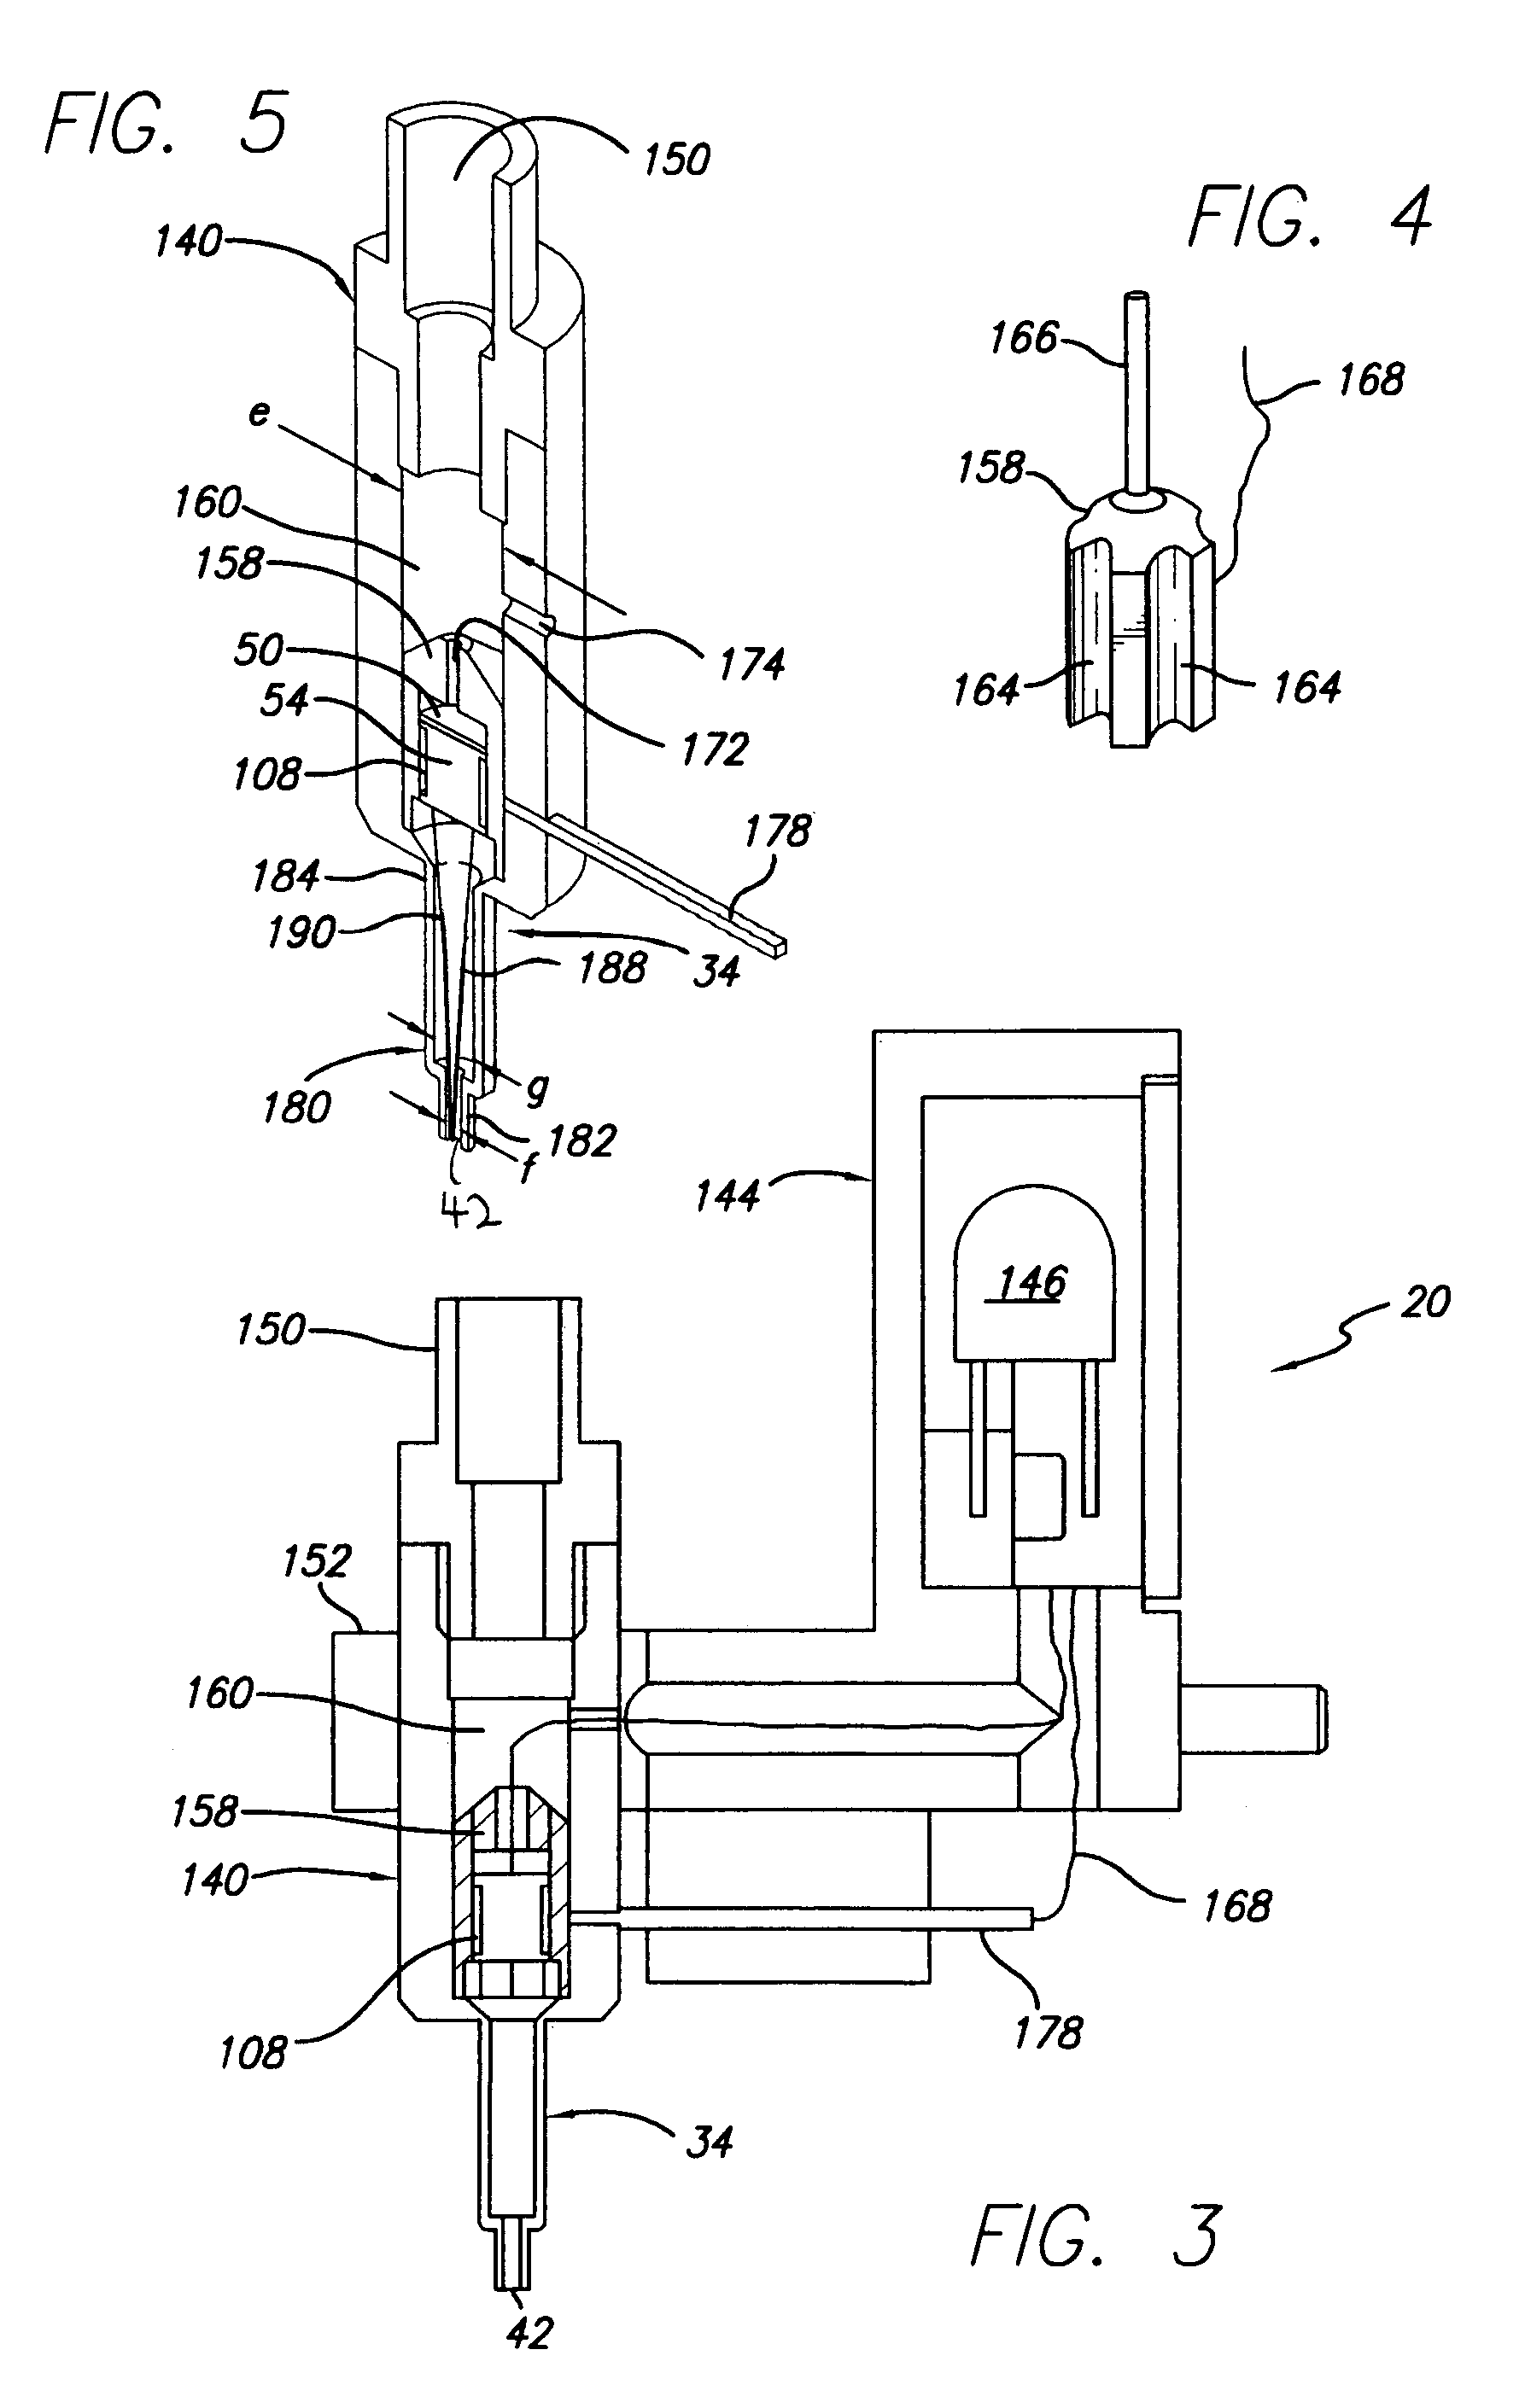 Acoustic liquid dispensing apparatus